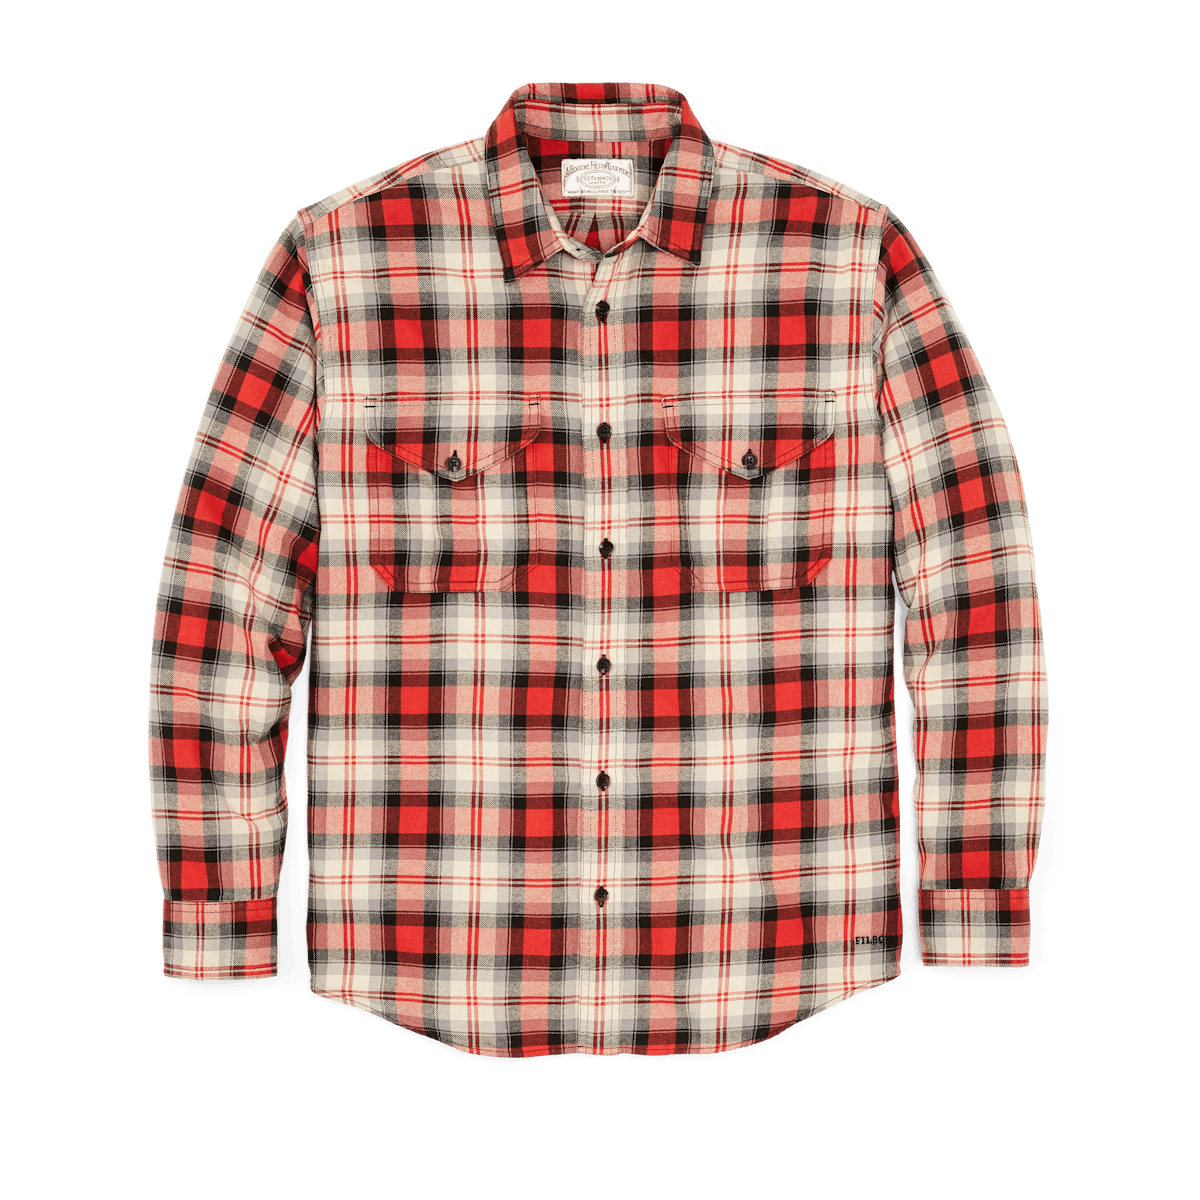 Filson Men's Lightweight Alaskan Guide Shirt